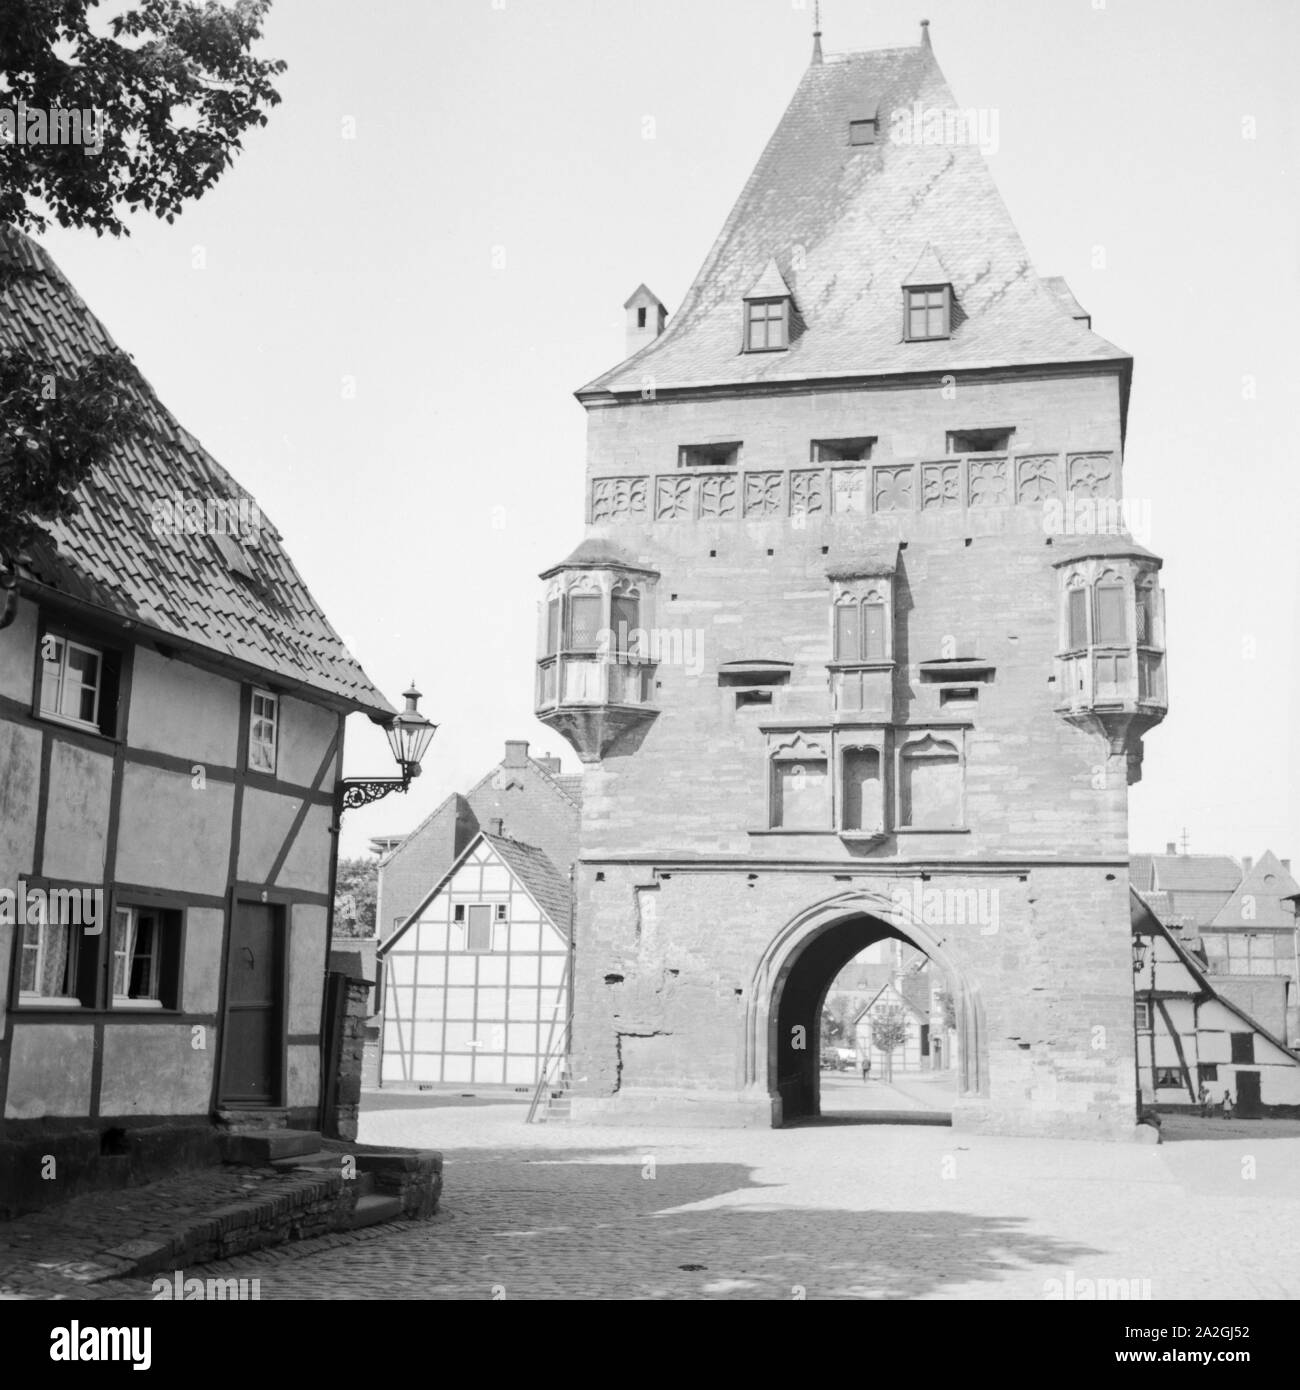 Das Osthofentor mit fachwerkhäusern in der Stadt Soest en Westfalen, Deutschland 1930er Jahre. Osthofentor city gate, con sus casas de madera en Soest en Westfalia, Alemania 1930. Foto de stock